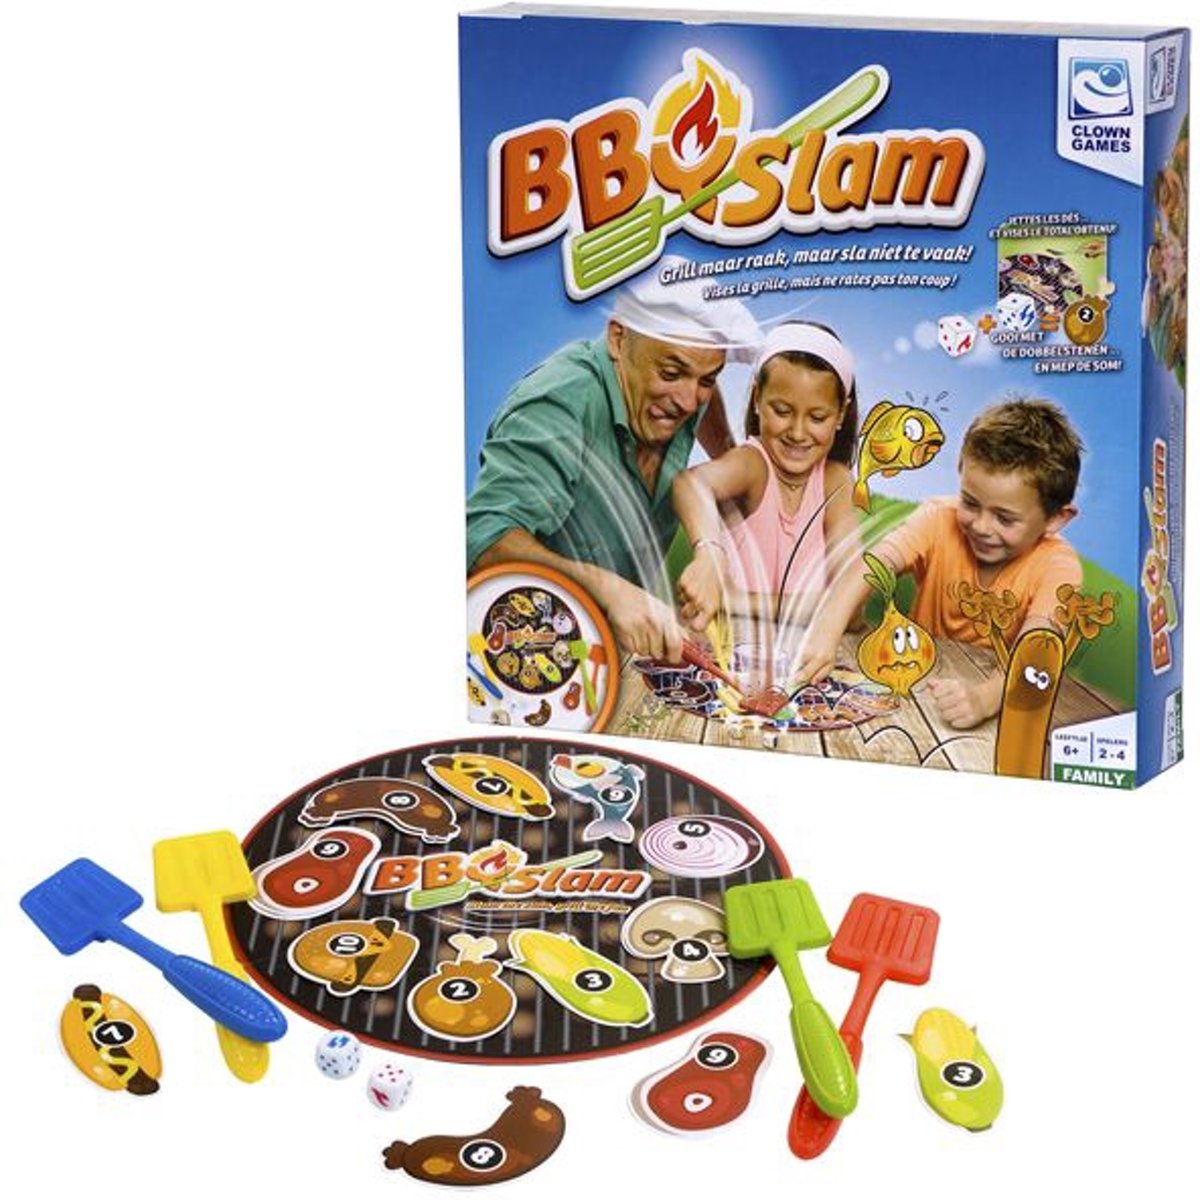 Clown Bbq Slam gezelschapsspel